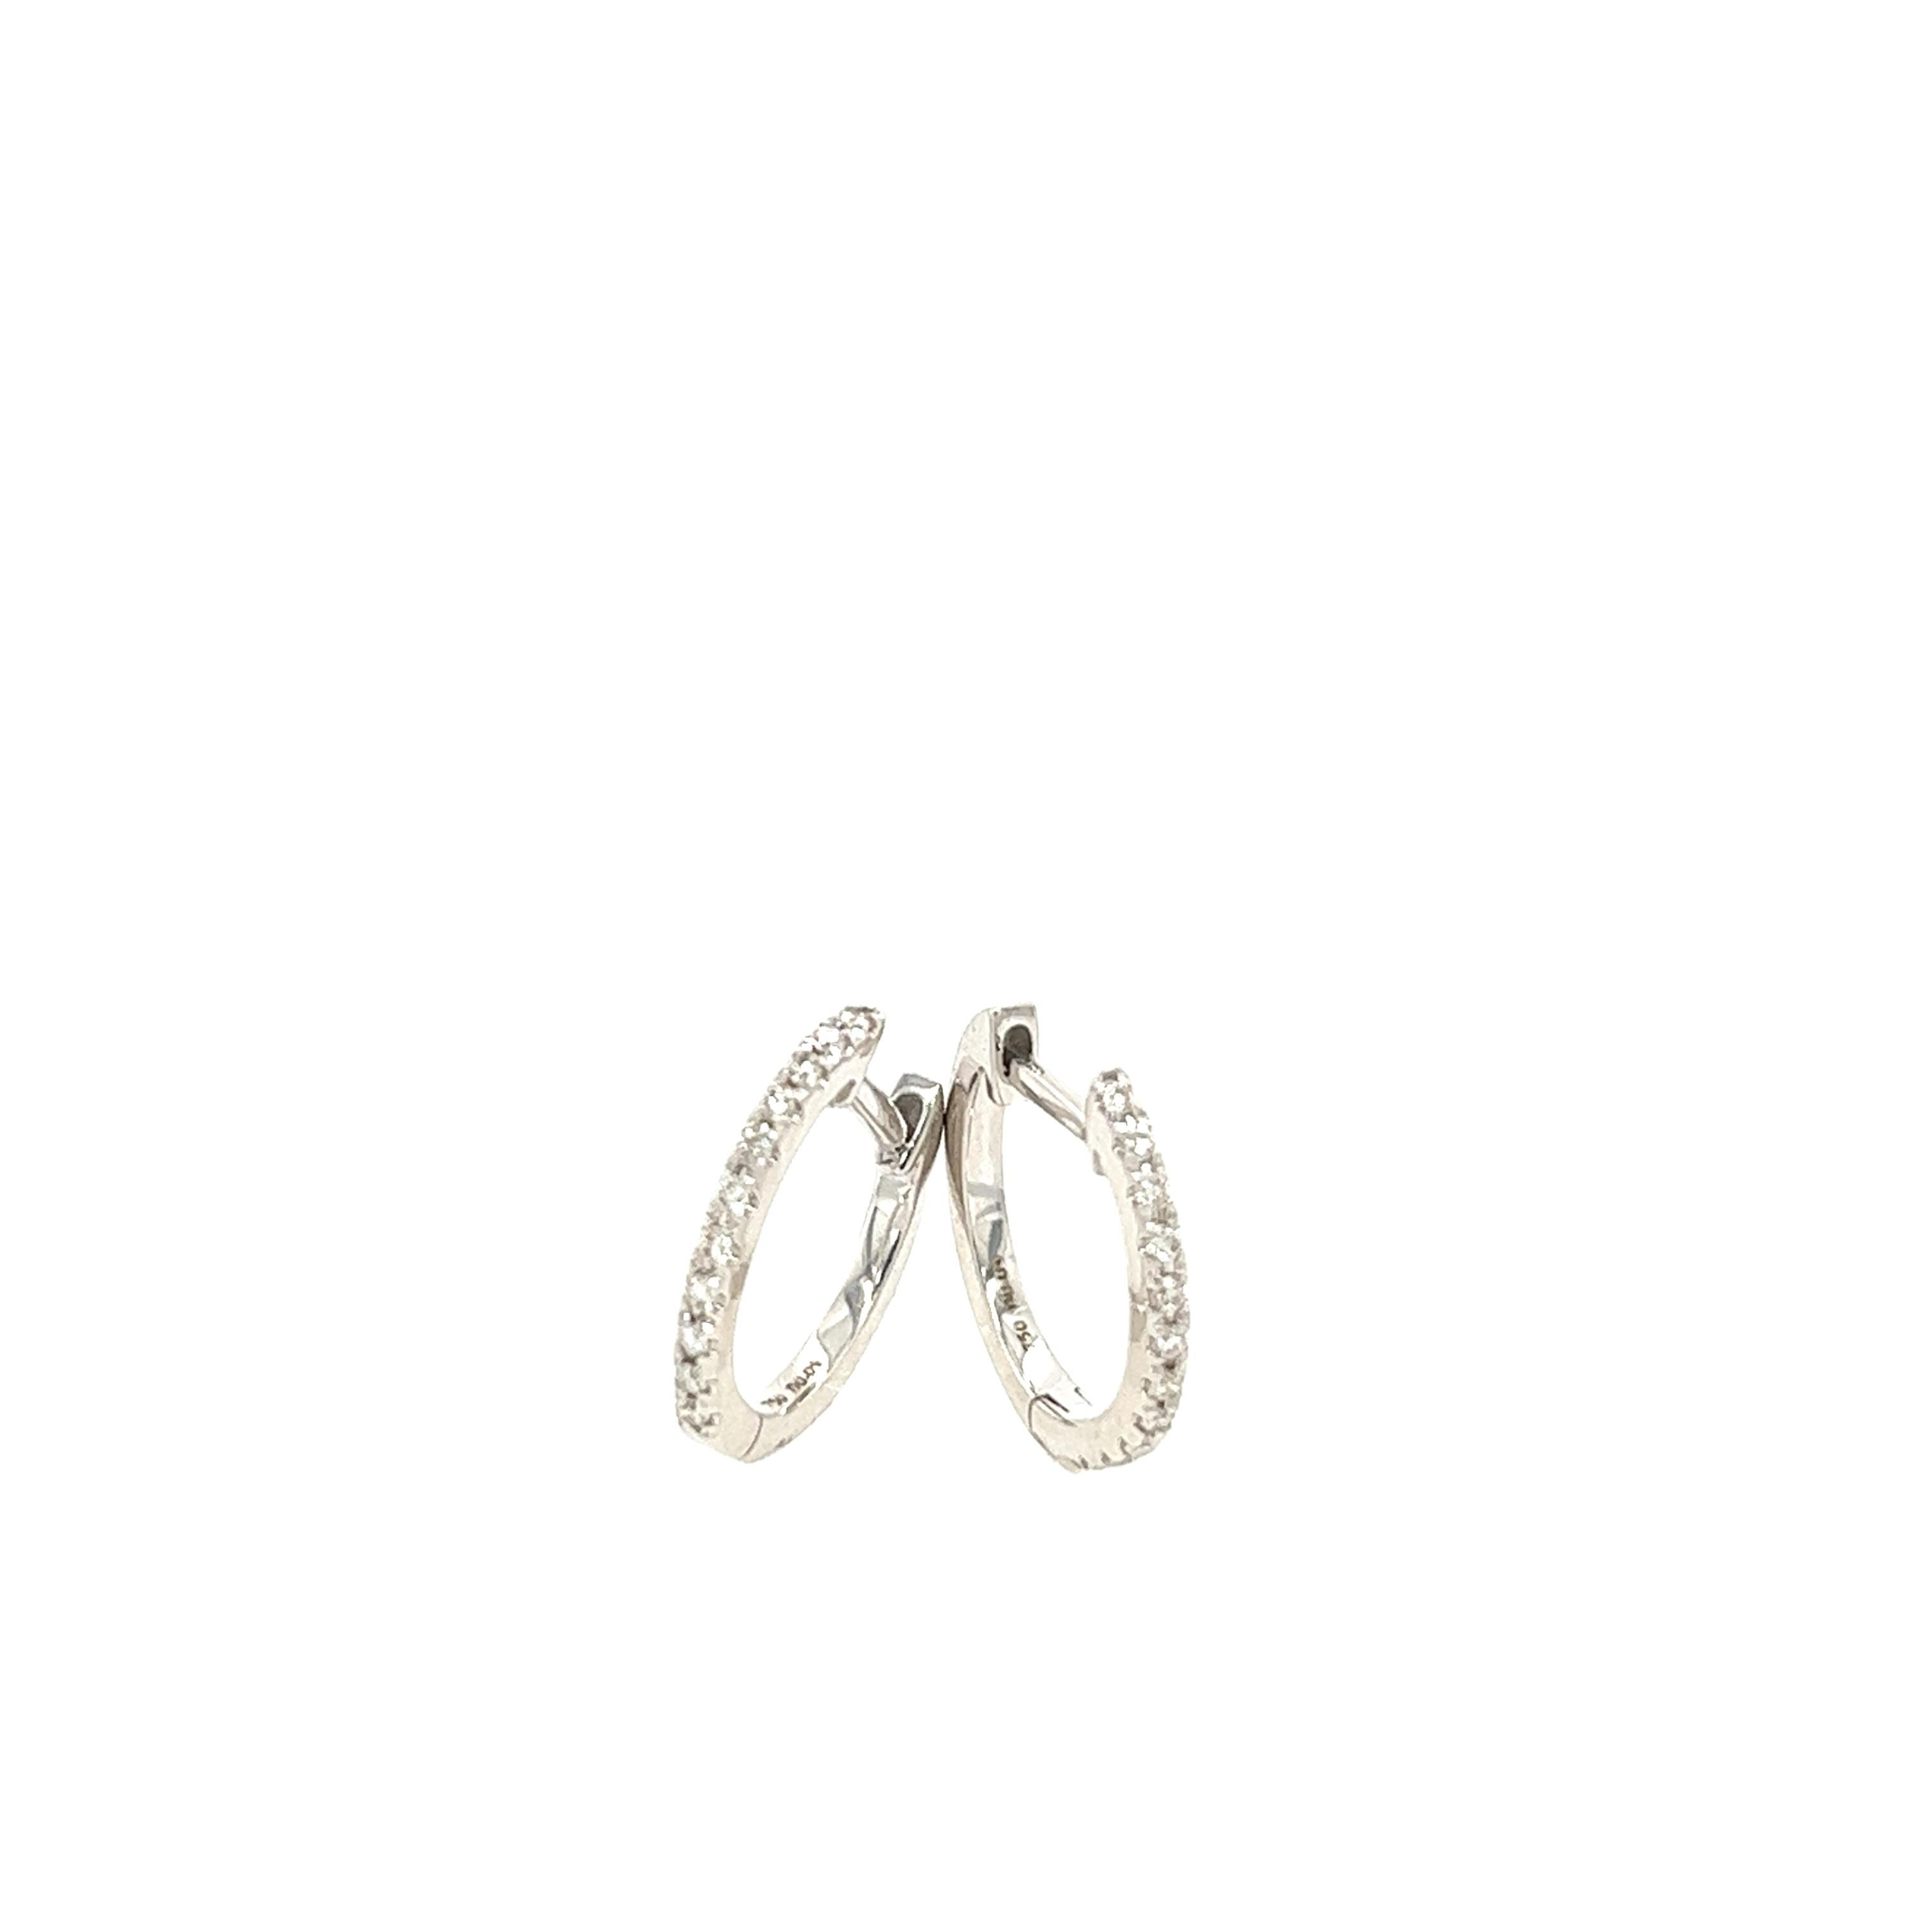 
Ces boucles d'oreilles mesurent 11 mm de diamètre et sont serties de 0,09 ct de diamants ronds. Ils constituent un excellent choix pour les femmes qui aiment porter des bijoux à la fois classes et élégants. Ces boucles d'oreilles sont un choix